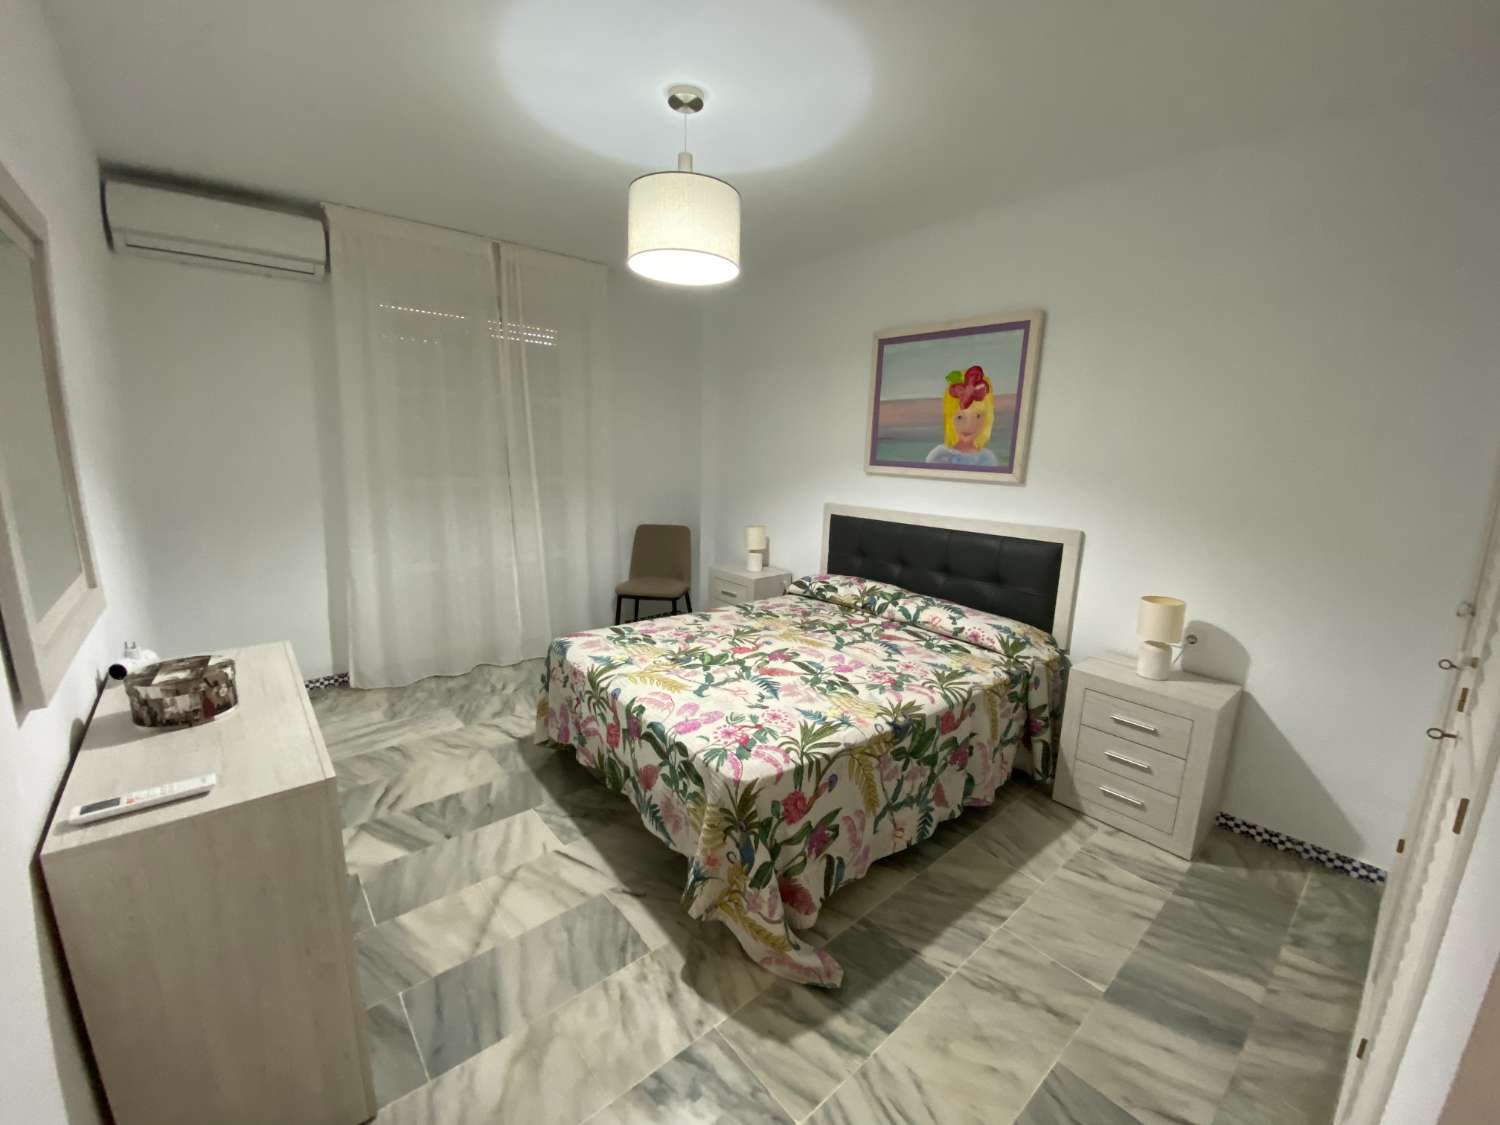 Estupendo piso 3 dormitorios en la playa de Fuengirola, piscina, aire, wi-fi